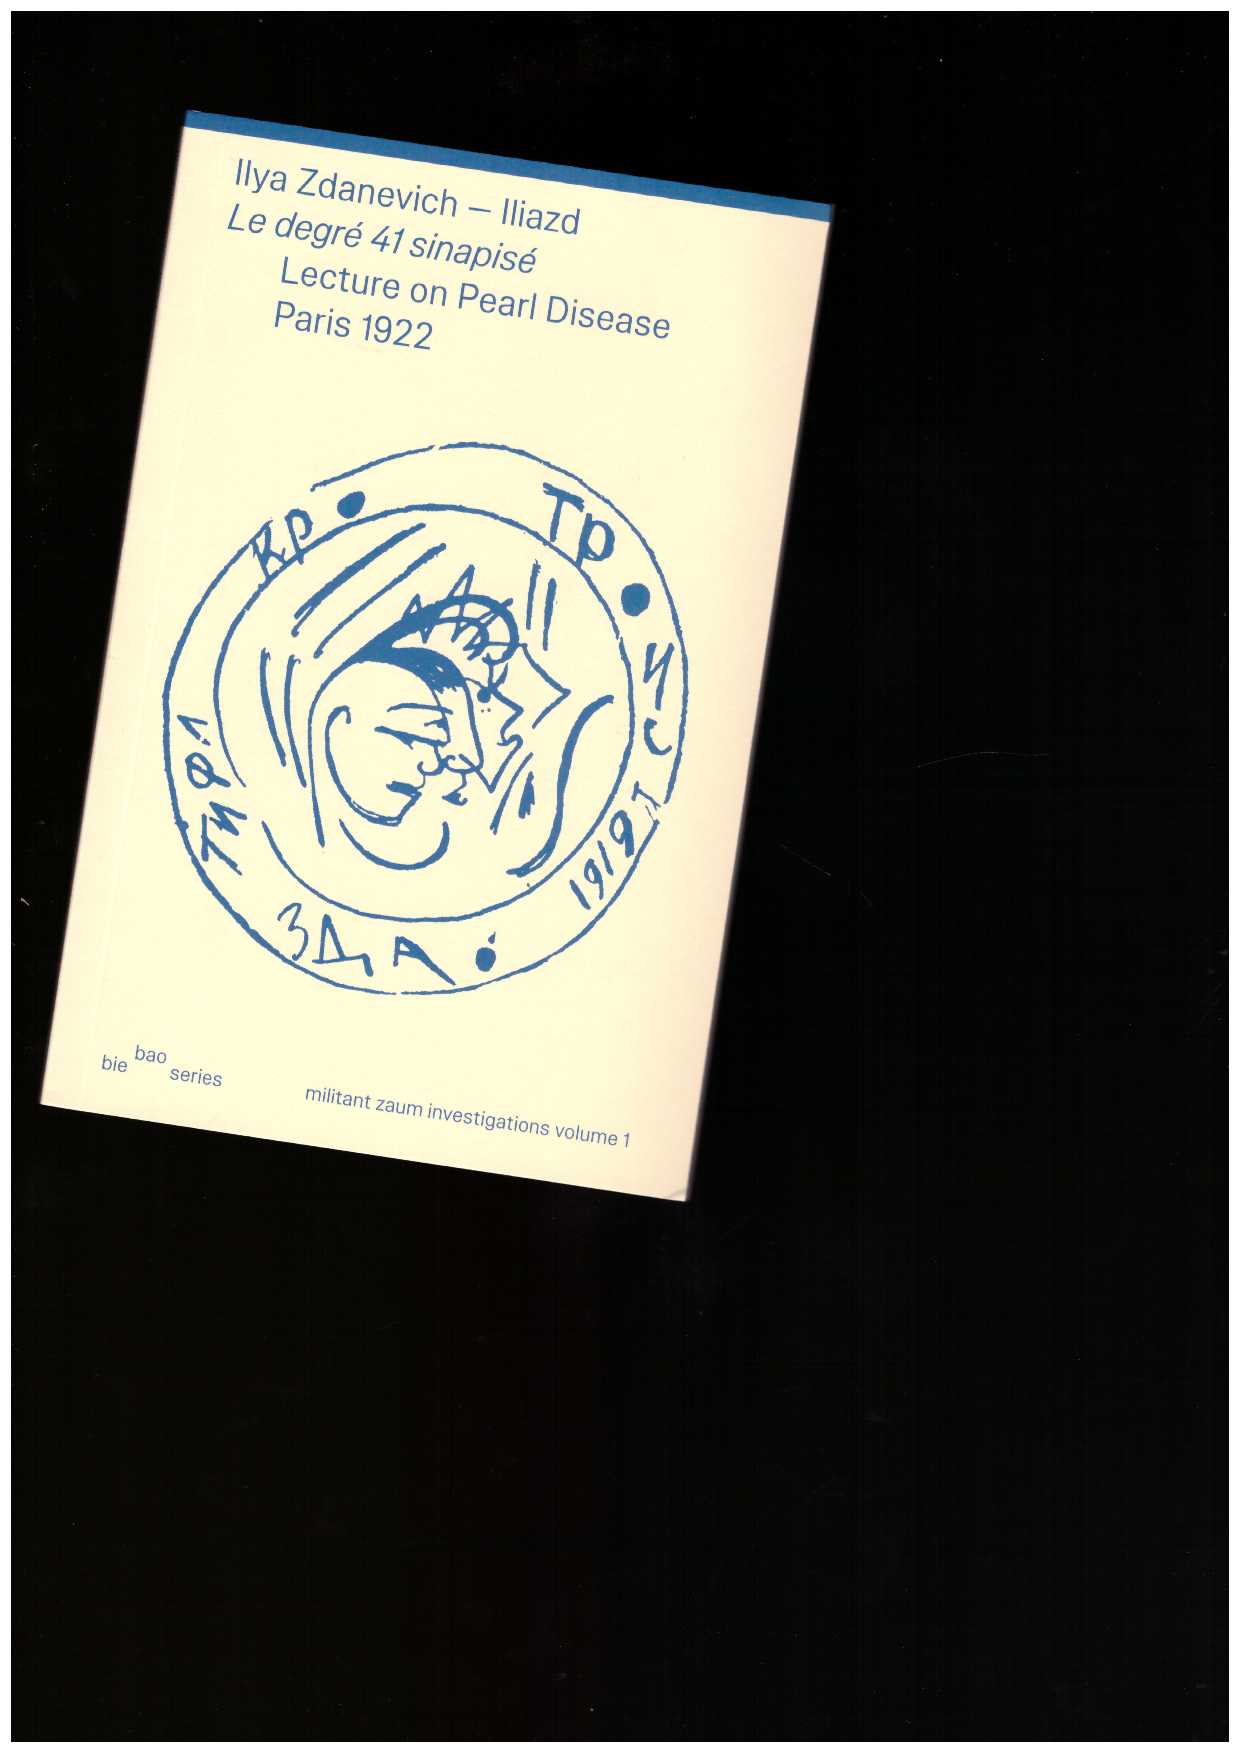 ILIAZD (Ilya Zdanevich) - Le degré 41 sinapisé – Lecture on Pearl Disease, Paris 1922